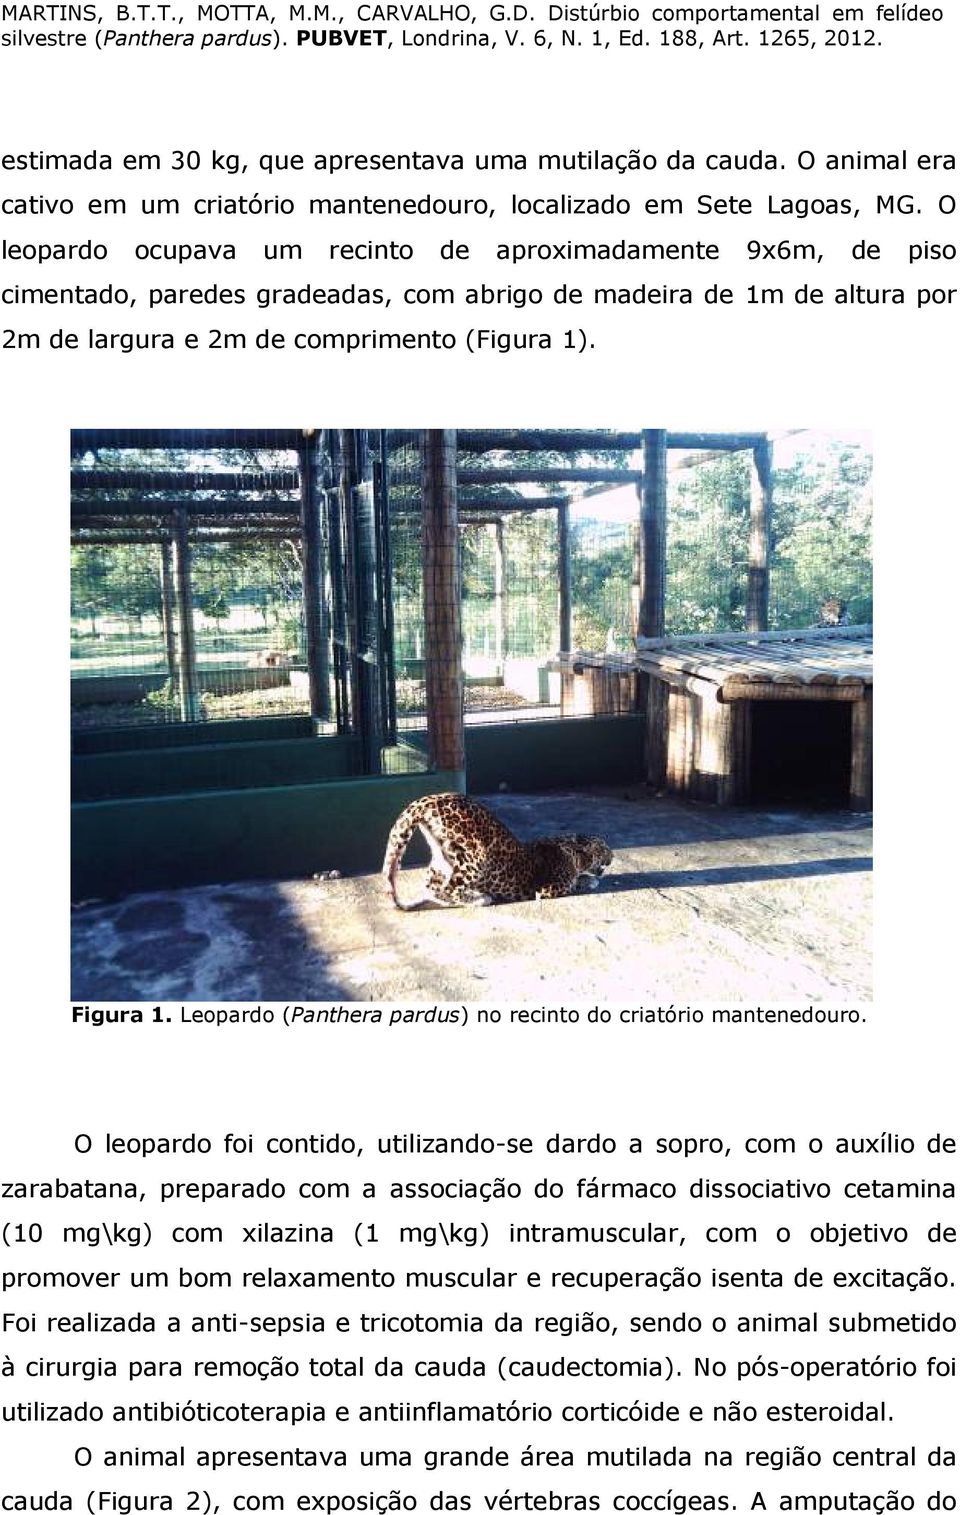 Leopardo (Panthera pardus) no recinto do criatório mantenedouro.